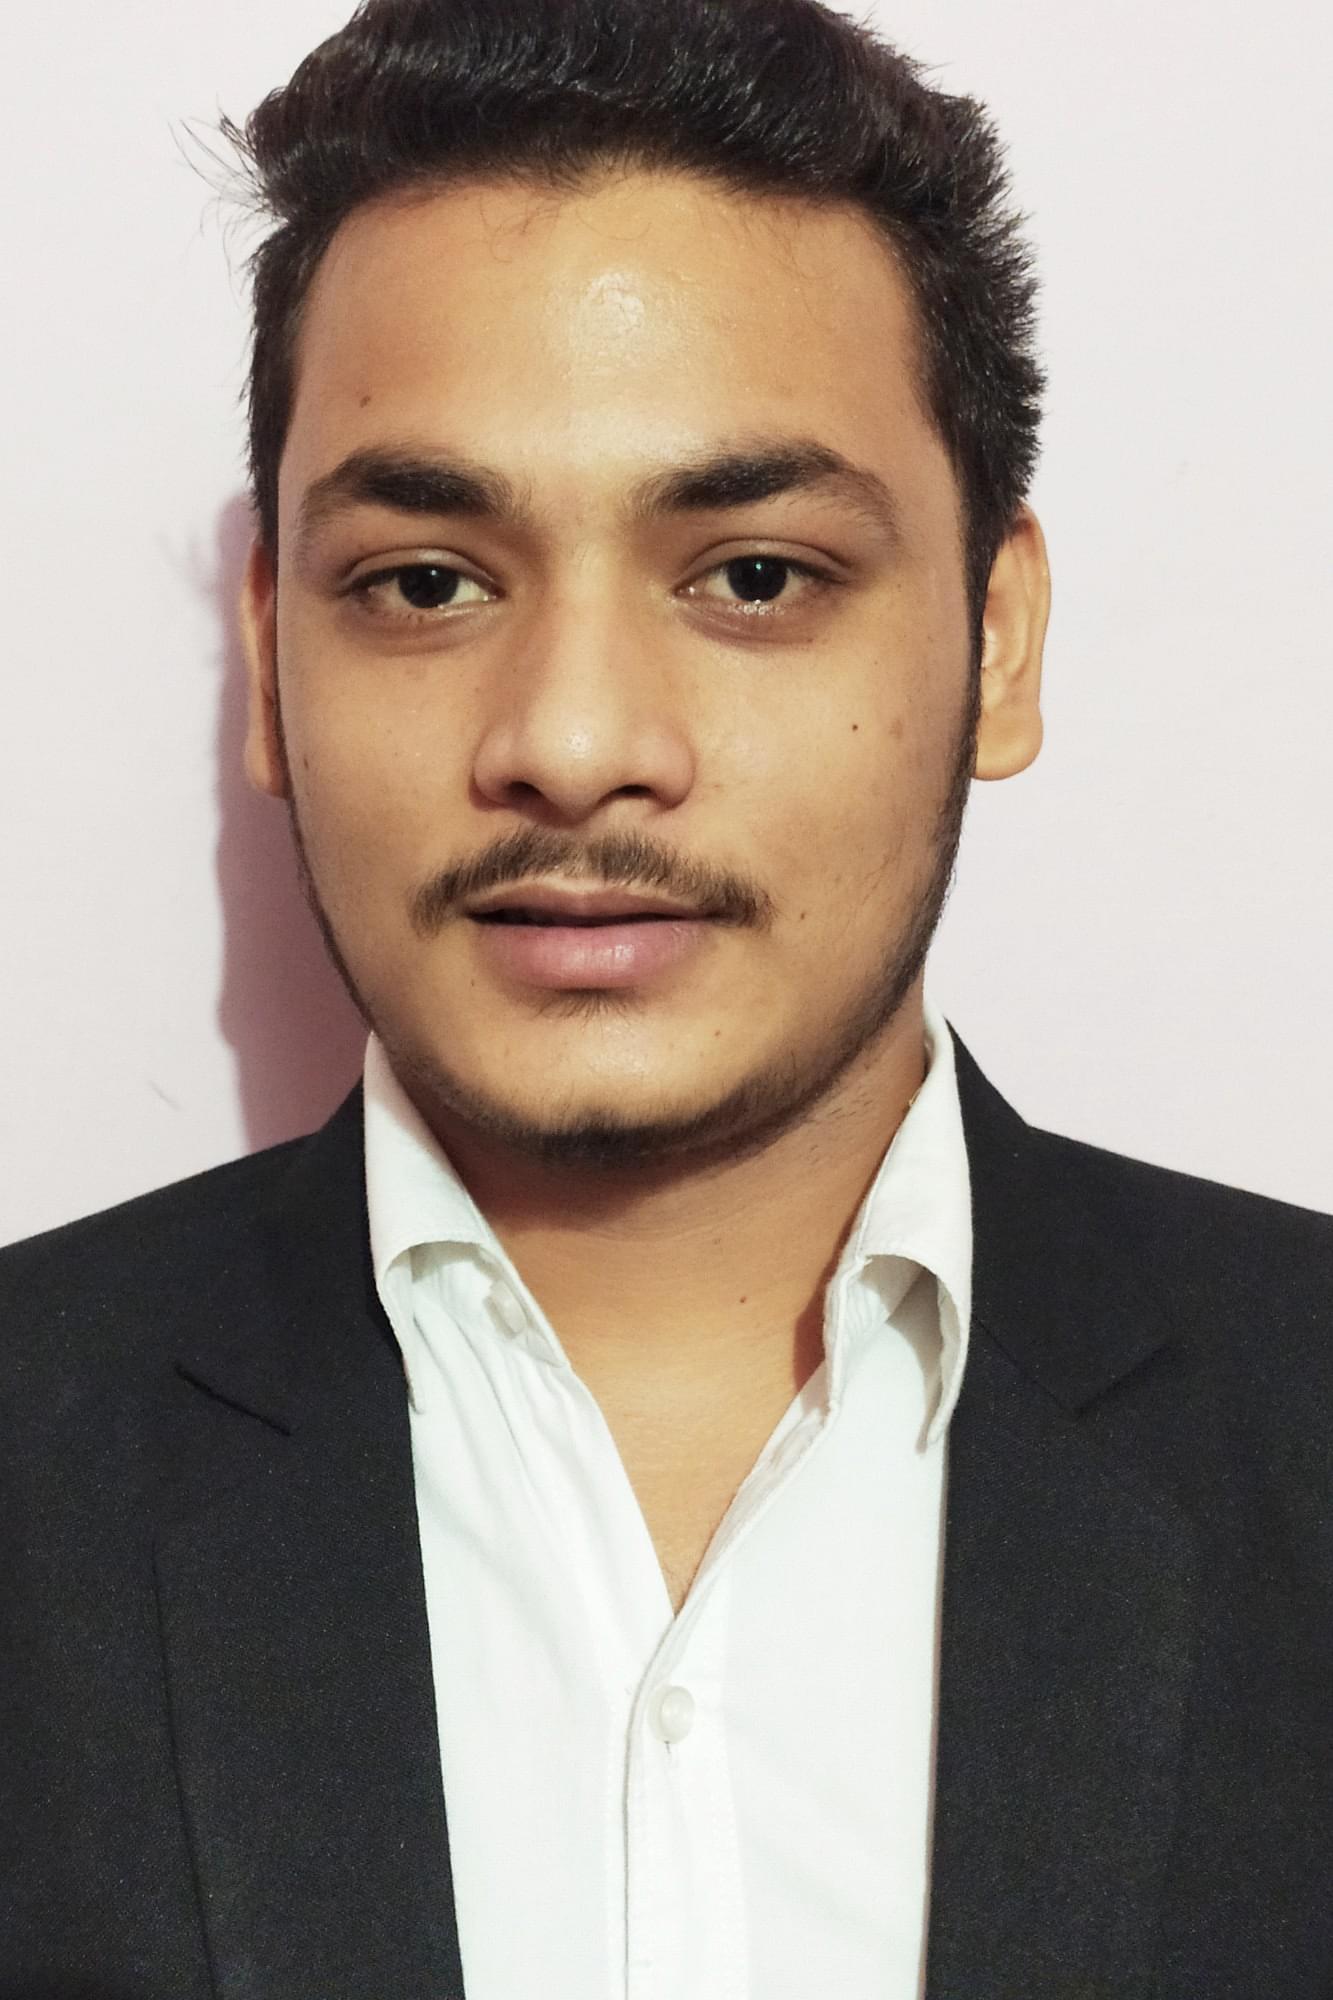 kushagra bhardwaj Profile Pic